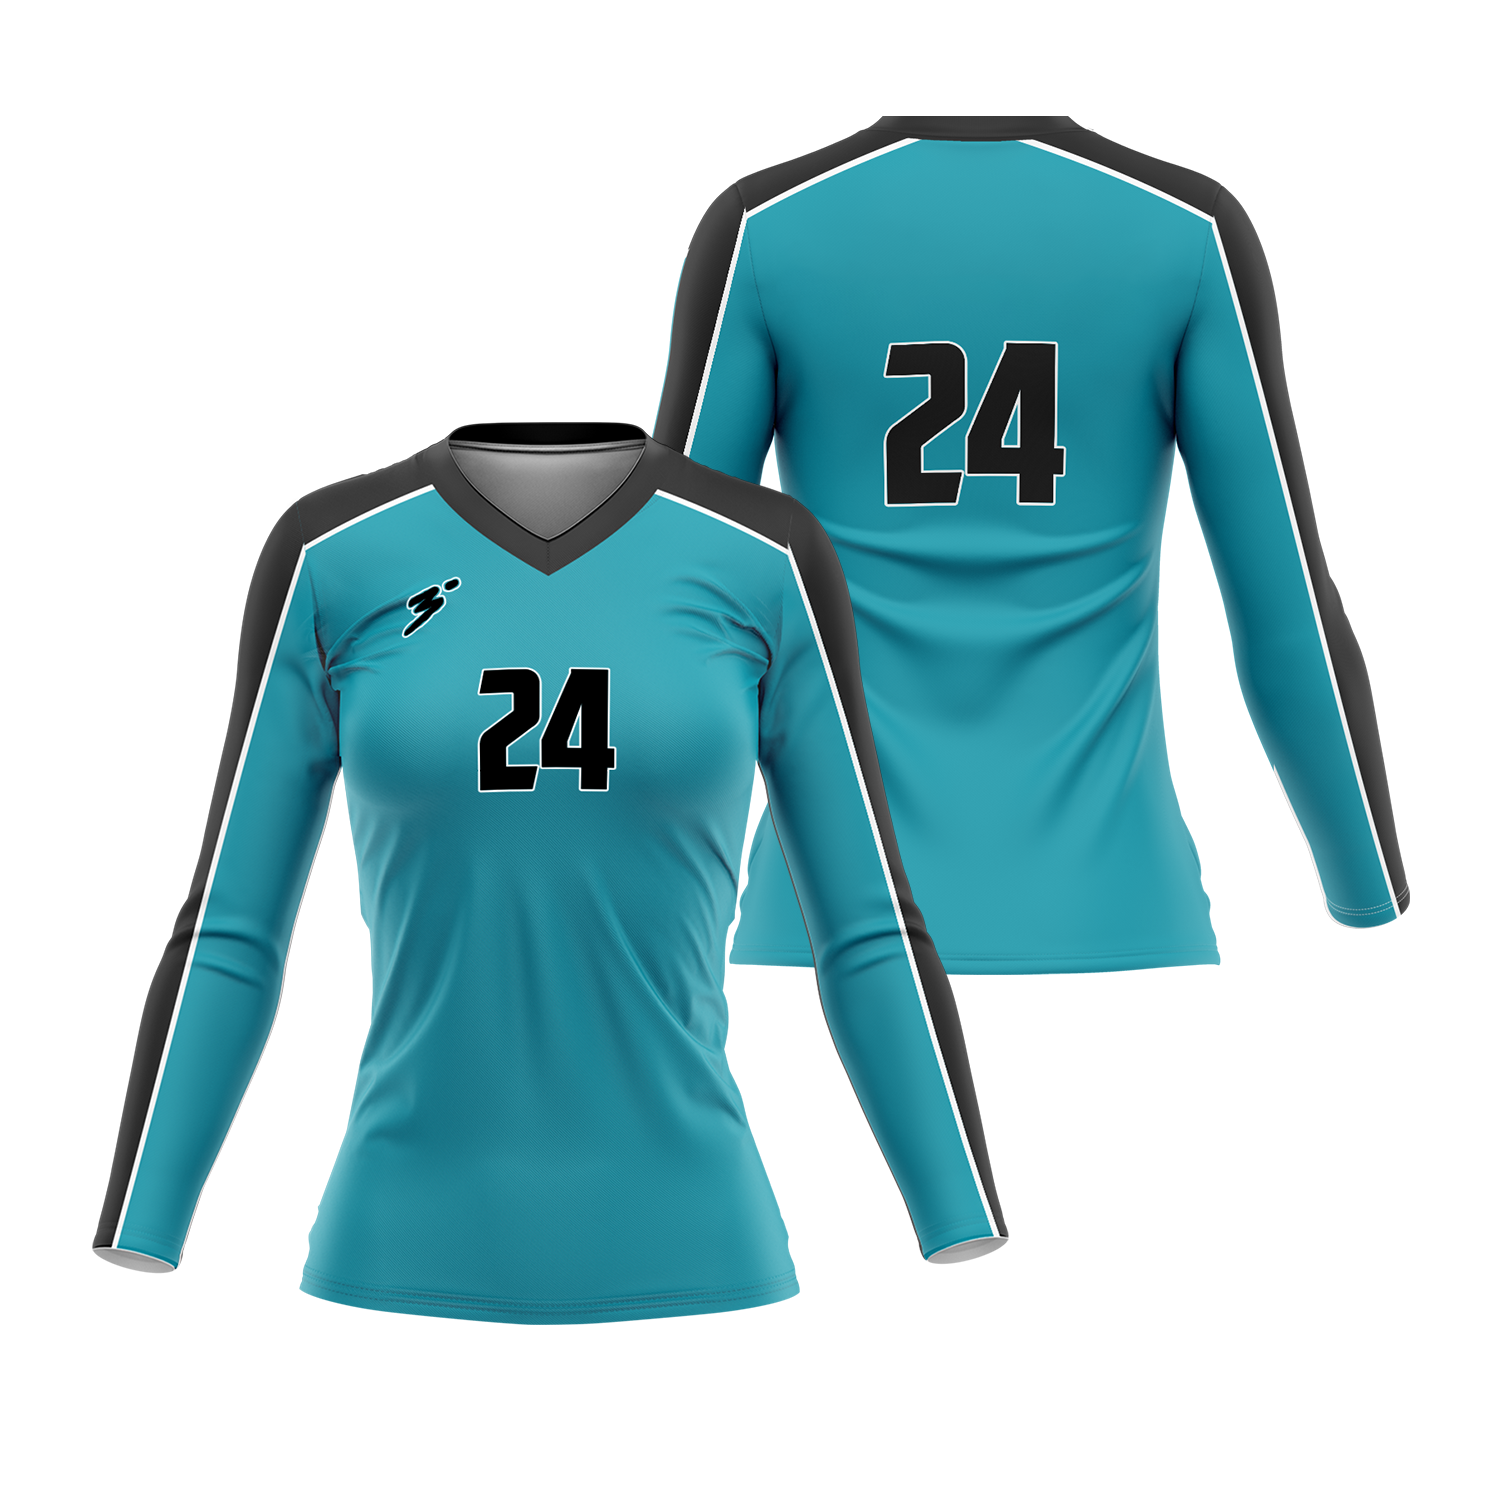 Dynamo - Third Degree Sportwear